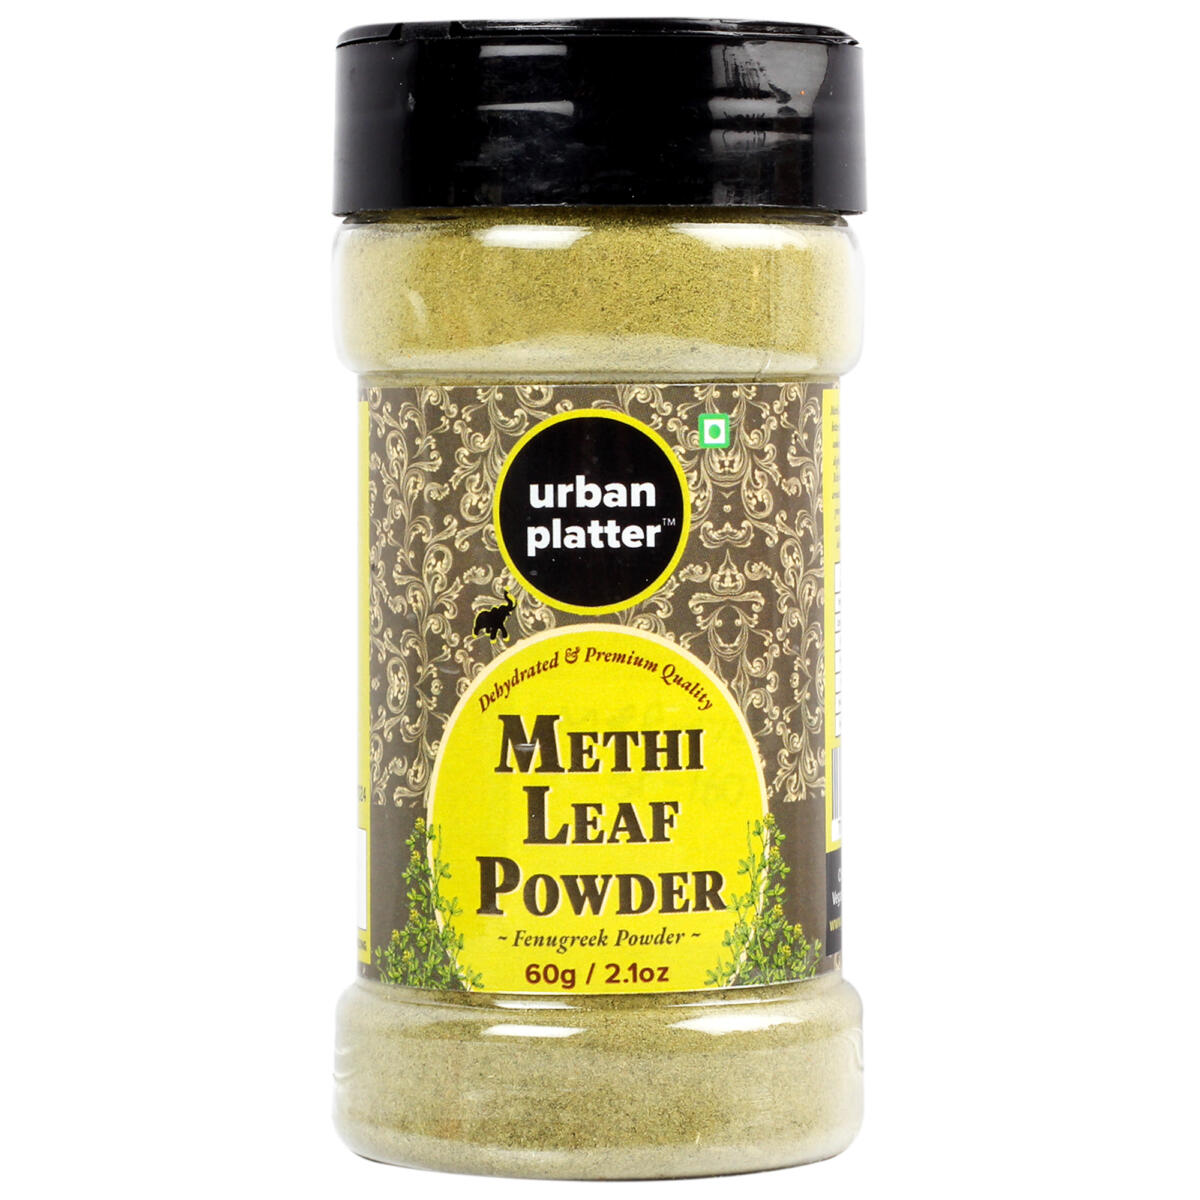 Urban Platter Methi Leaf Powder Shaker Jar, 60g / 2.1oz [Dehydrated, Fenugreek Powder, Aromatic] Methi Urban Platter